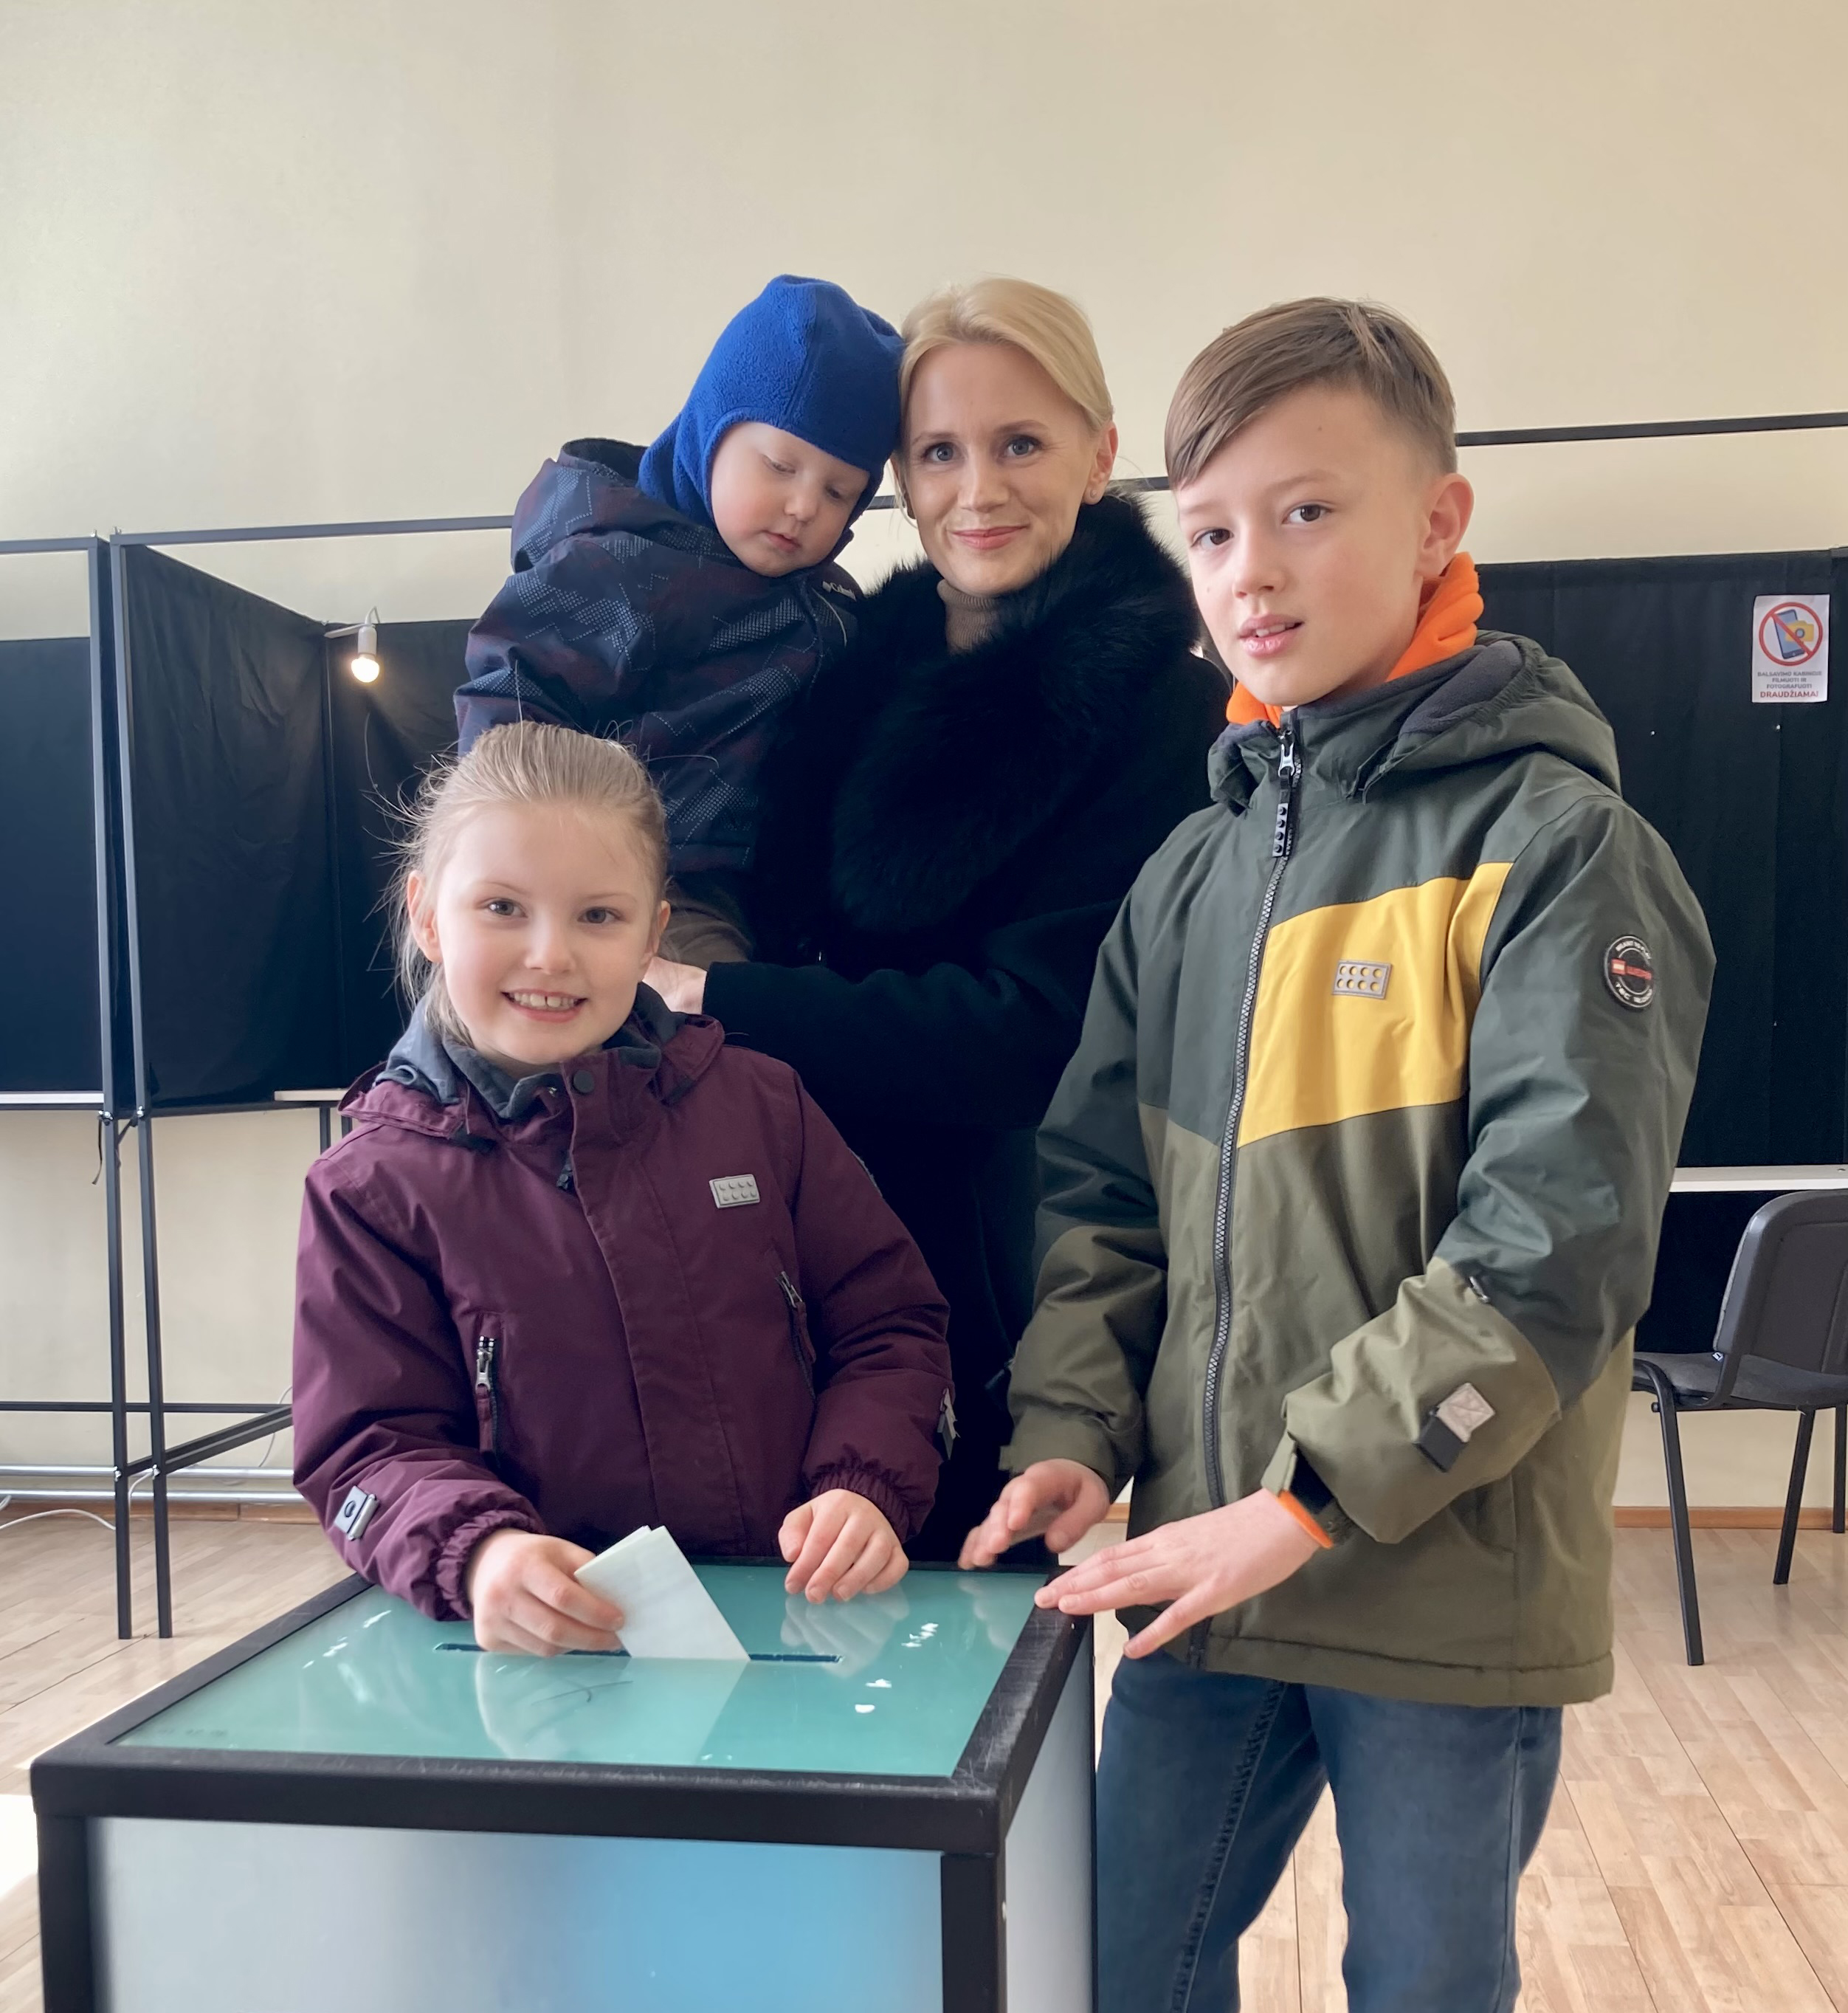 Rasa Vitkauskienė – Daugų balsavimo apylinkėje su dviem sūnumis ir dukra.